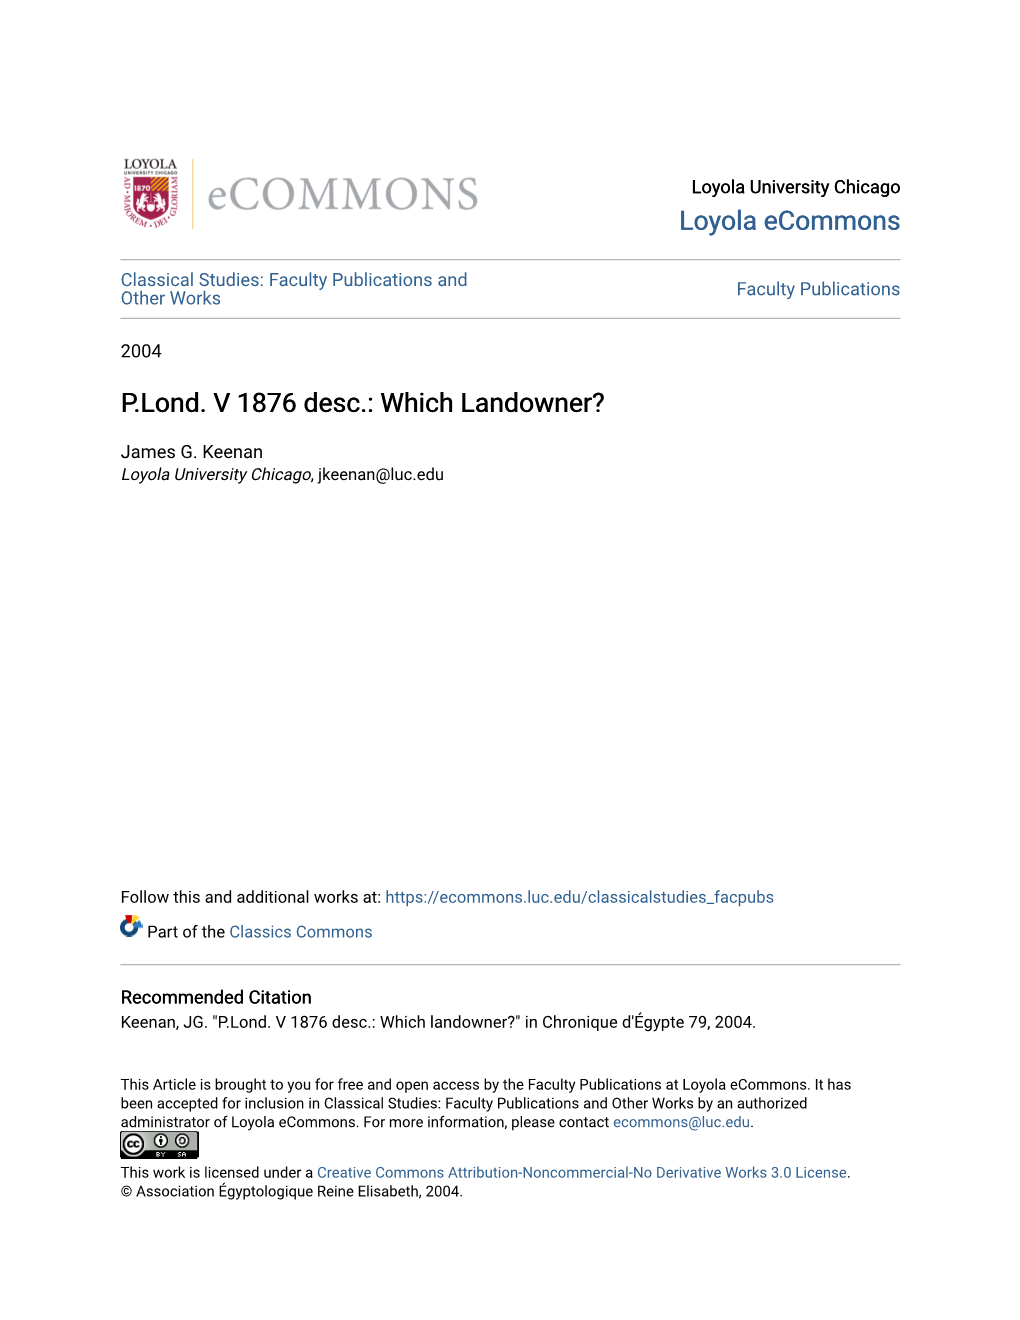 P.Lond. V 1876 Desc.: Which Landowner?